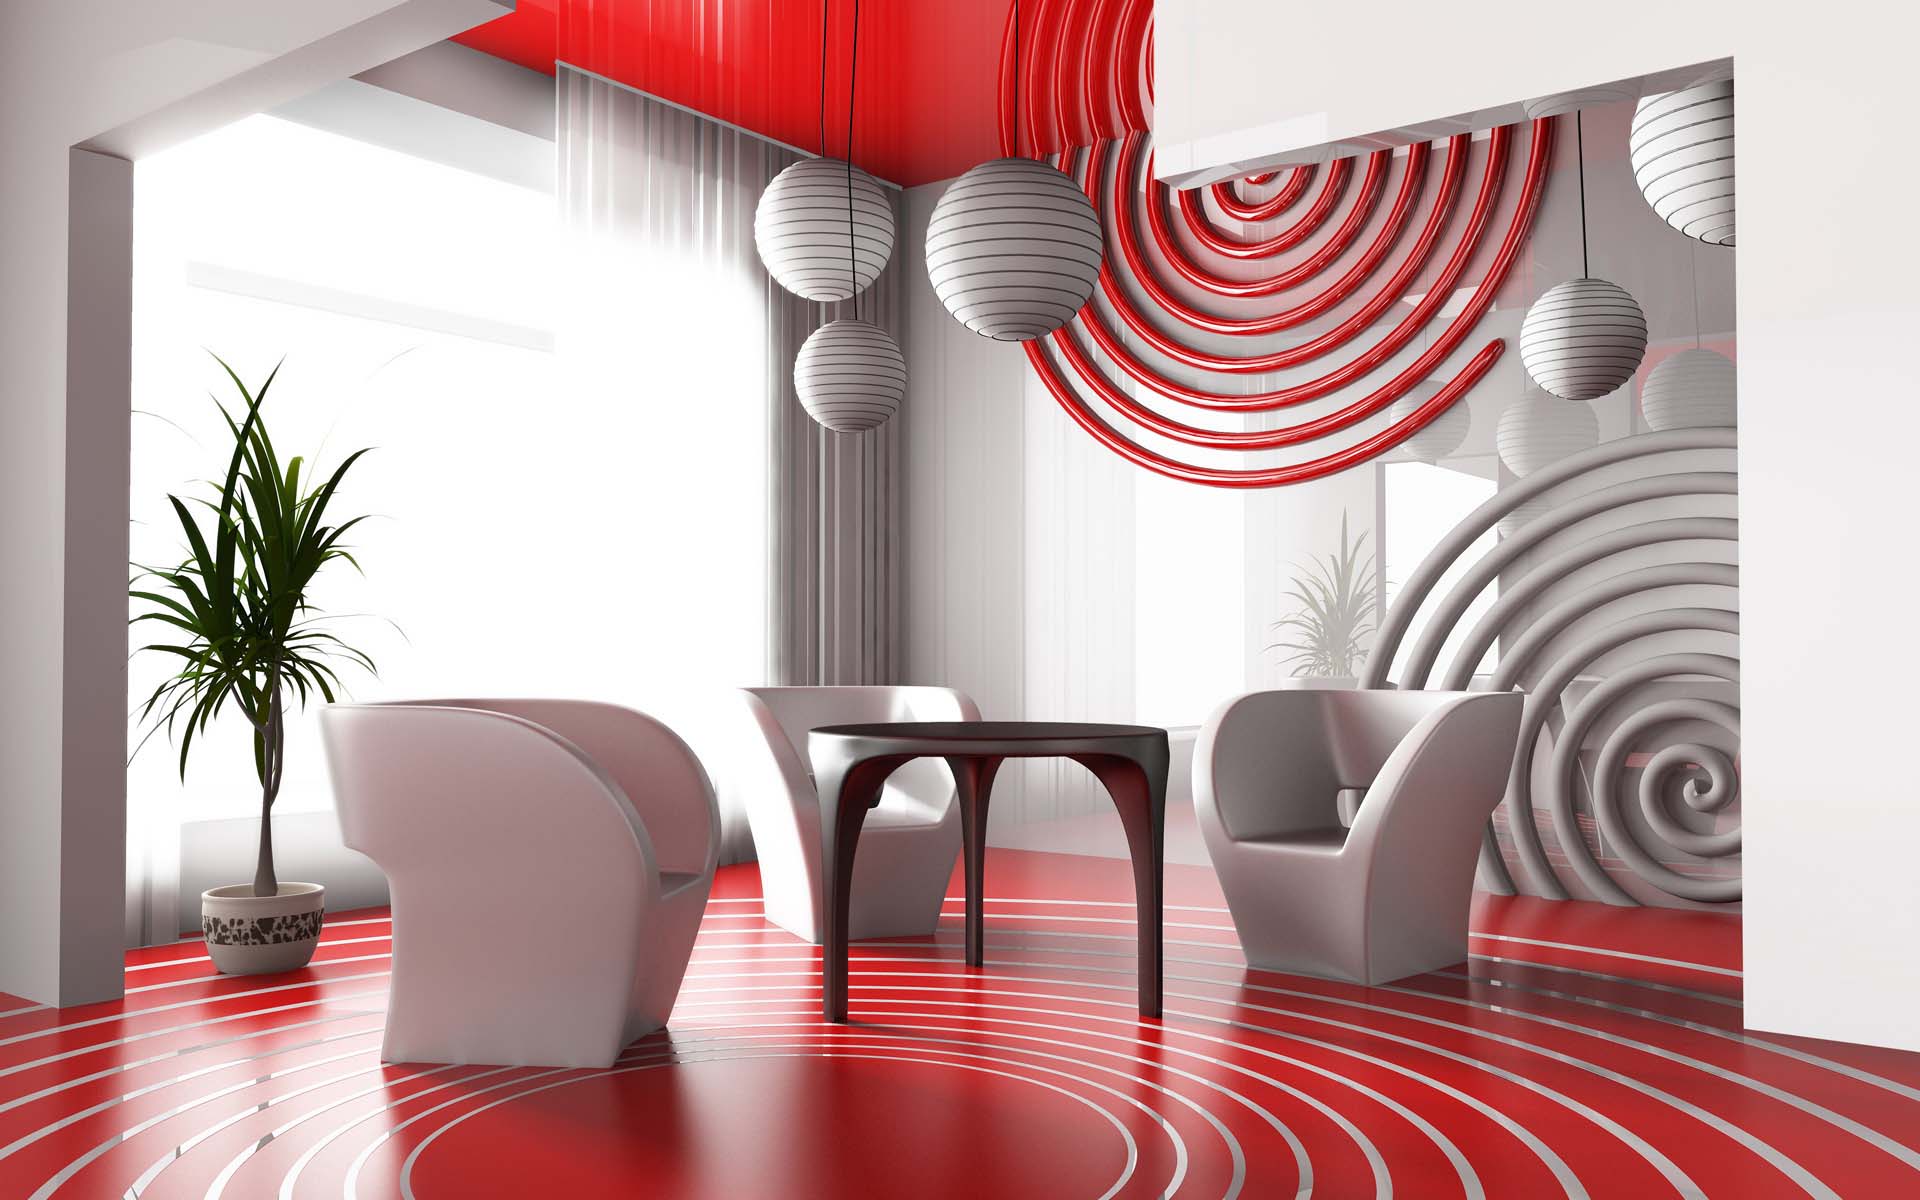 opzione combinazione di colori chiari all'interno di una stanza moderna